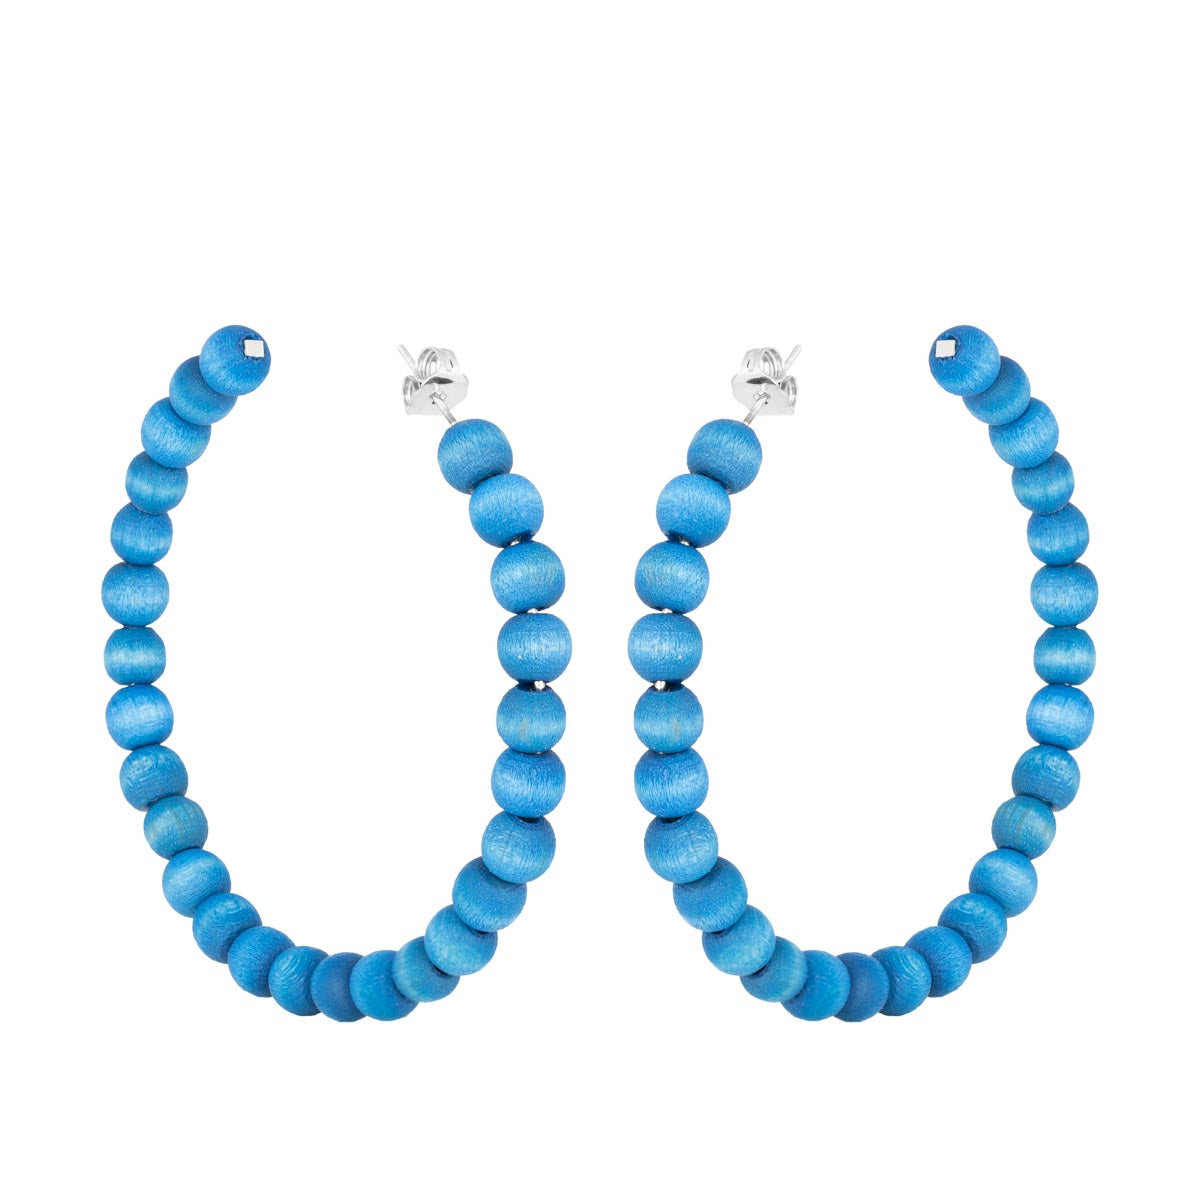 Sofia earrings, blue